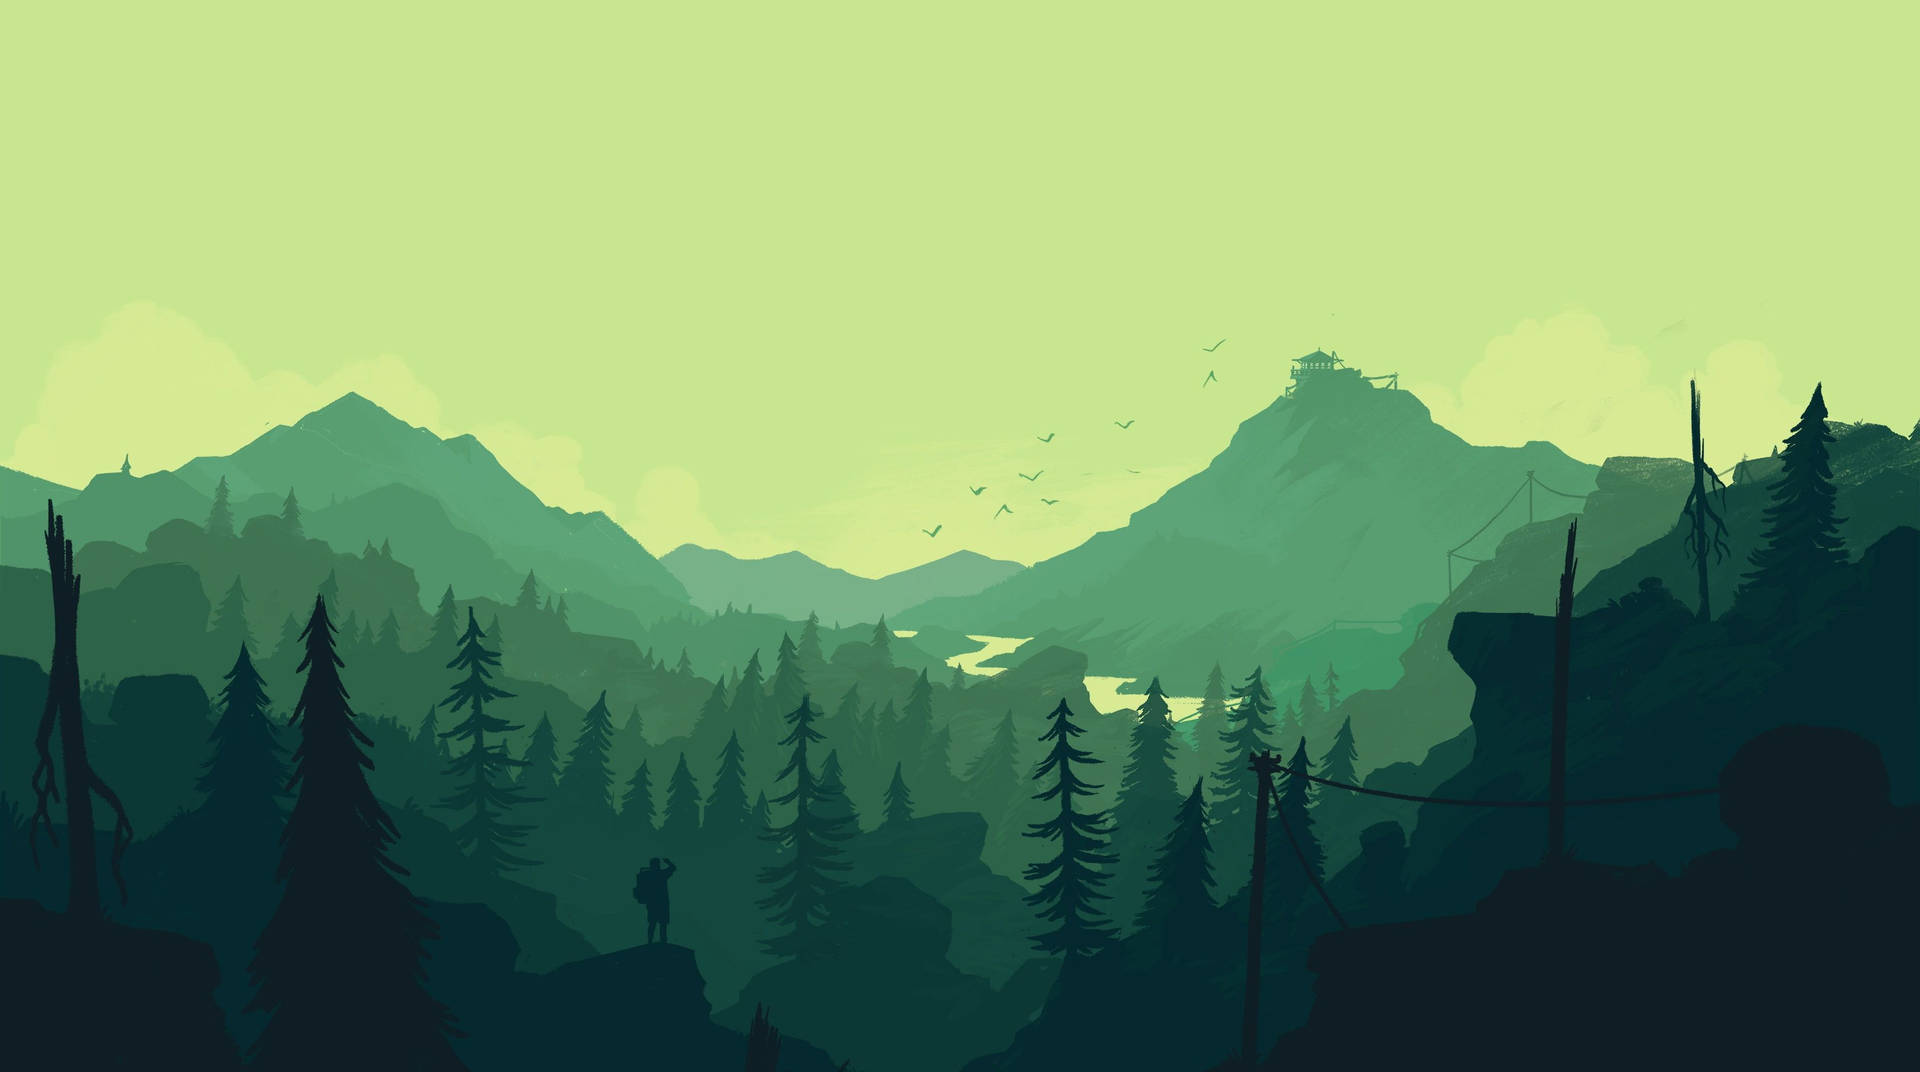 Forest View Digital Art Wallpaper